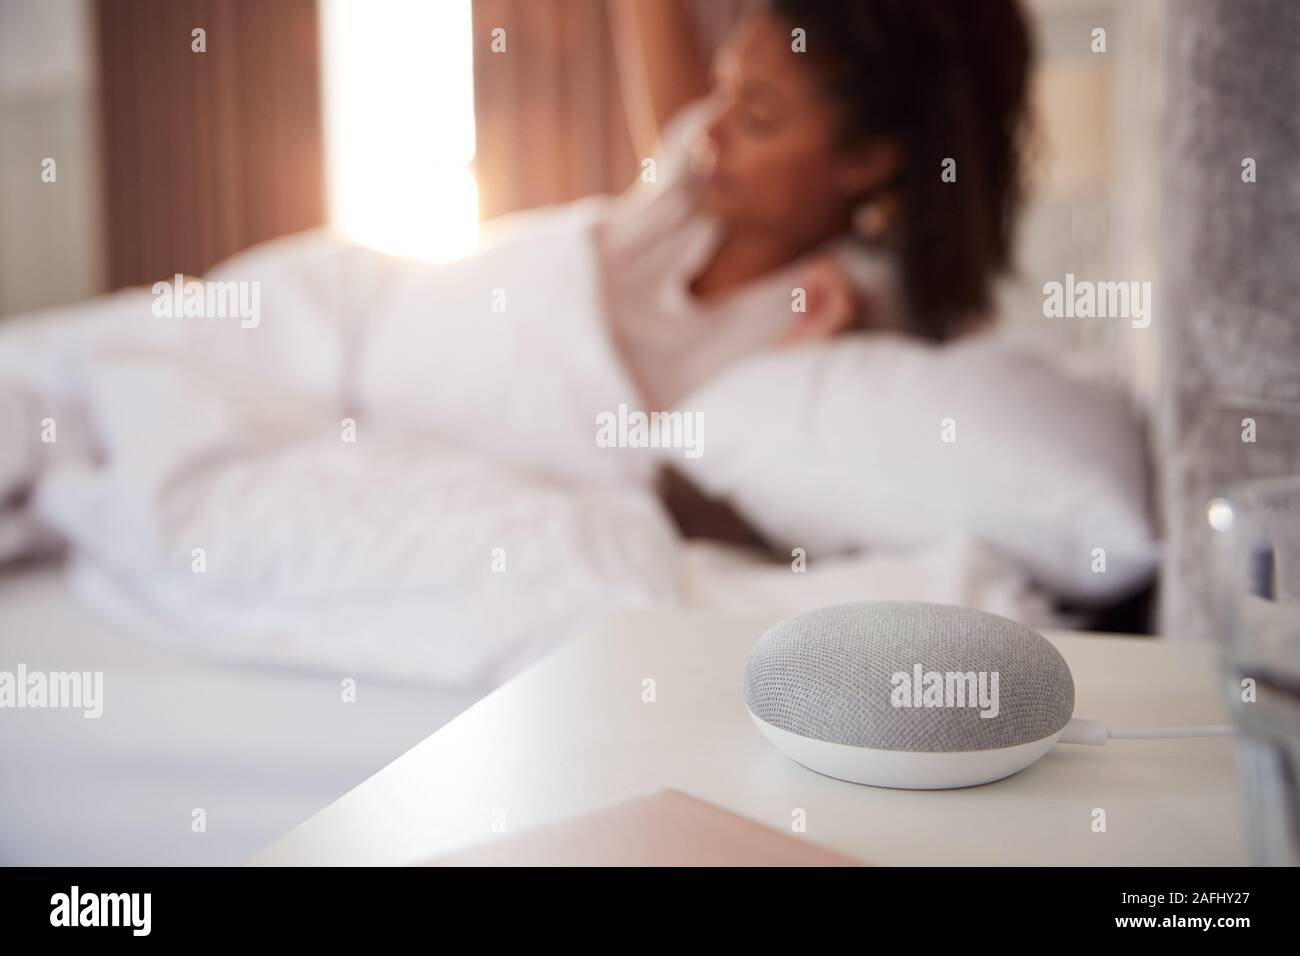 Frau Aufwachen im Bett mit Voice Assistant auf dem Nachttisch neben ihr Stockfoto